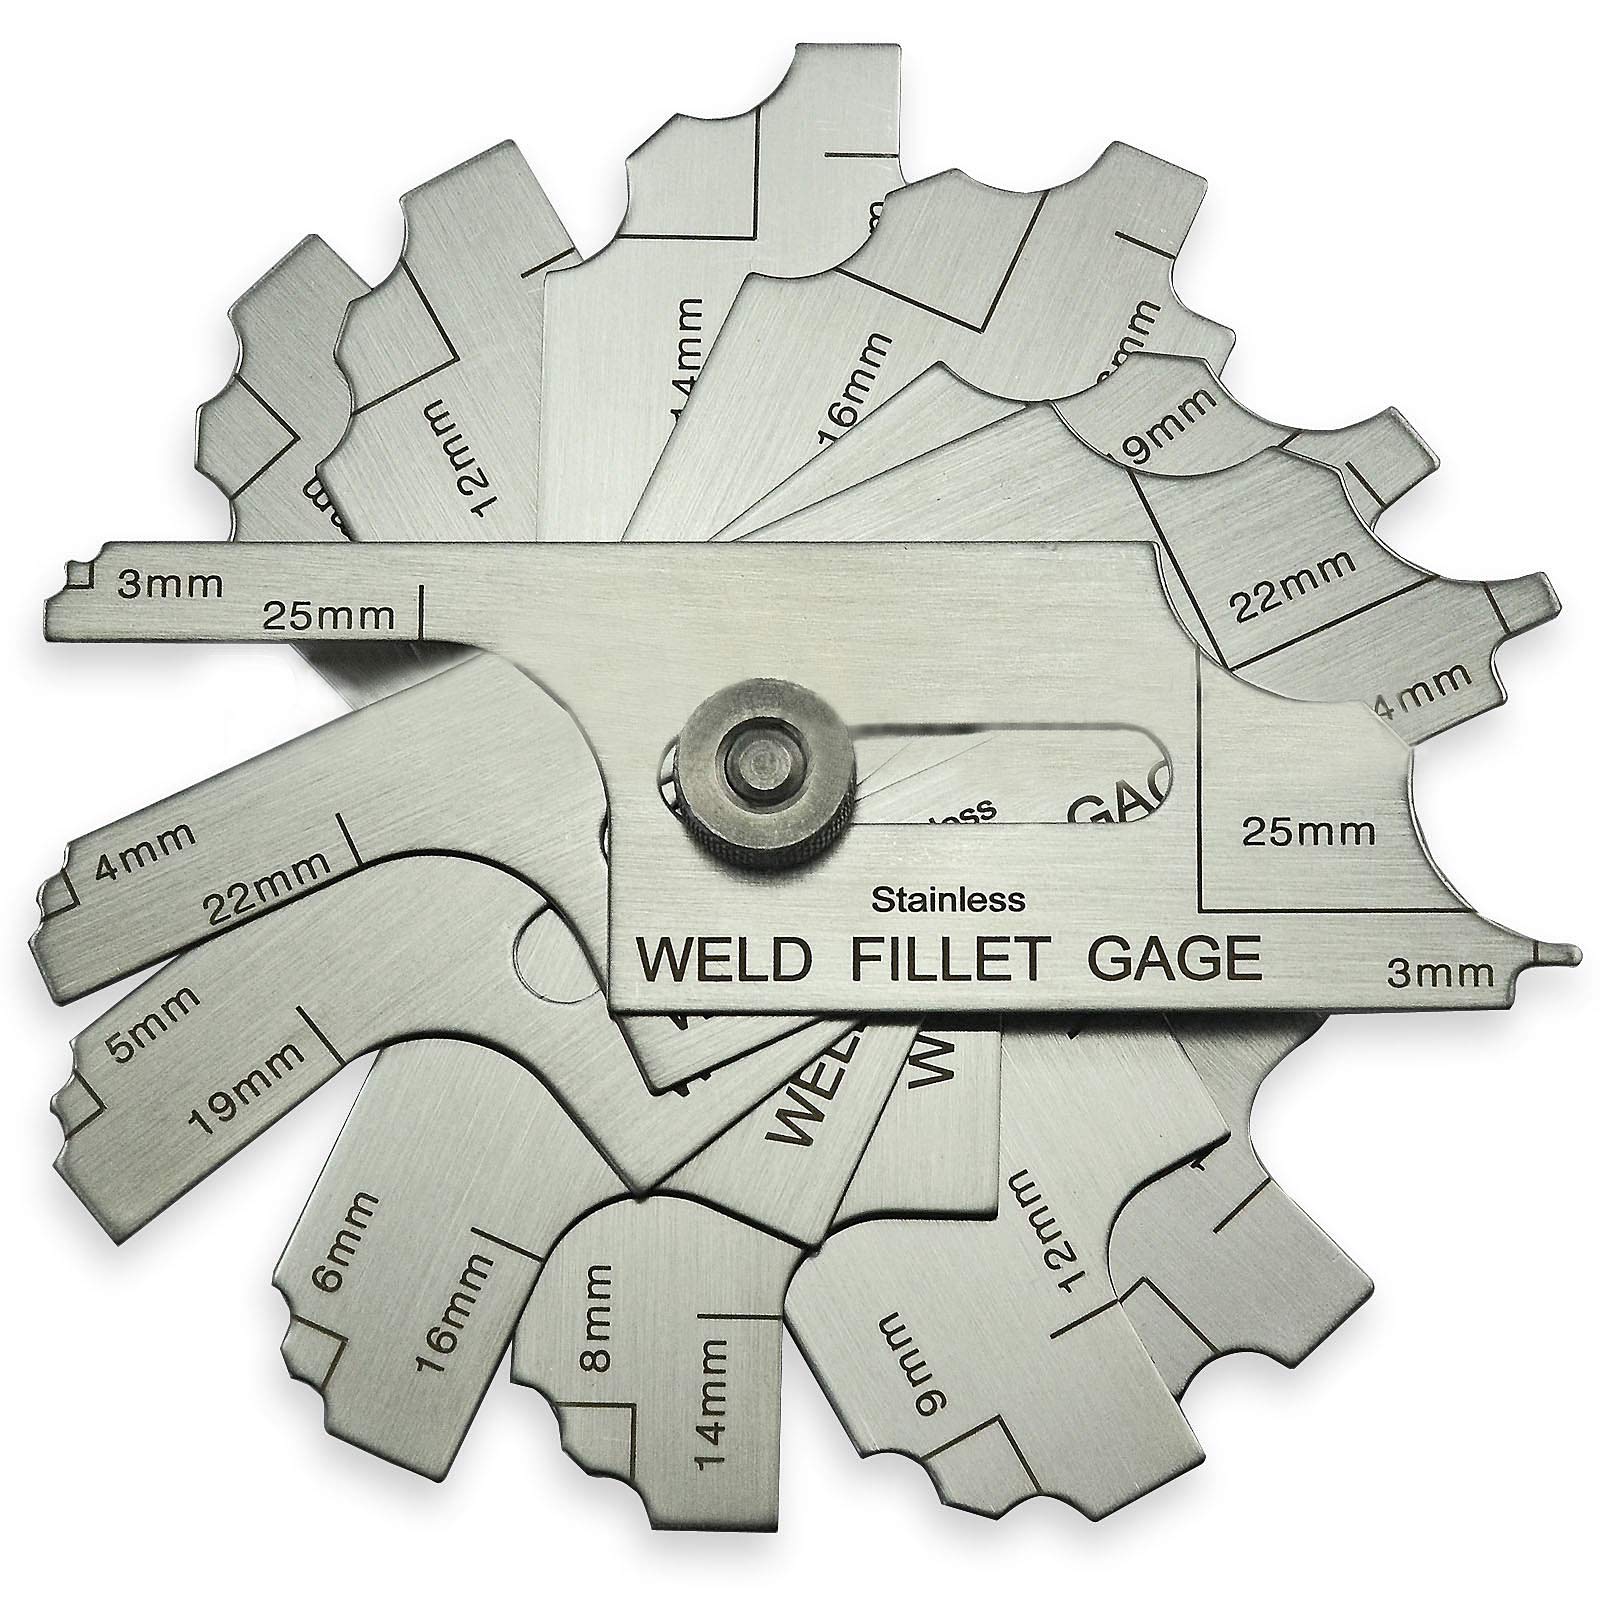 7piece Fillet Weld Set Gage RL Gauge Welding Inspection Test Ulnar Metric